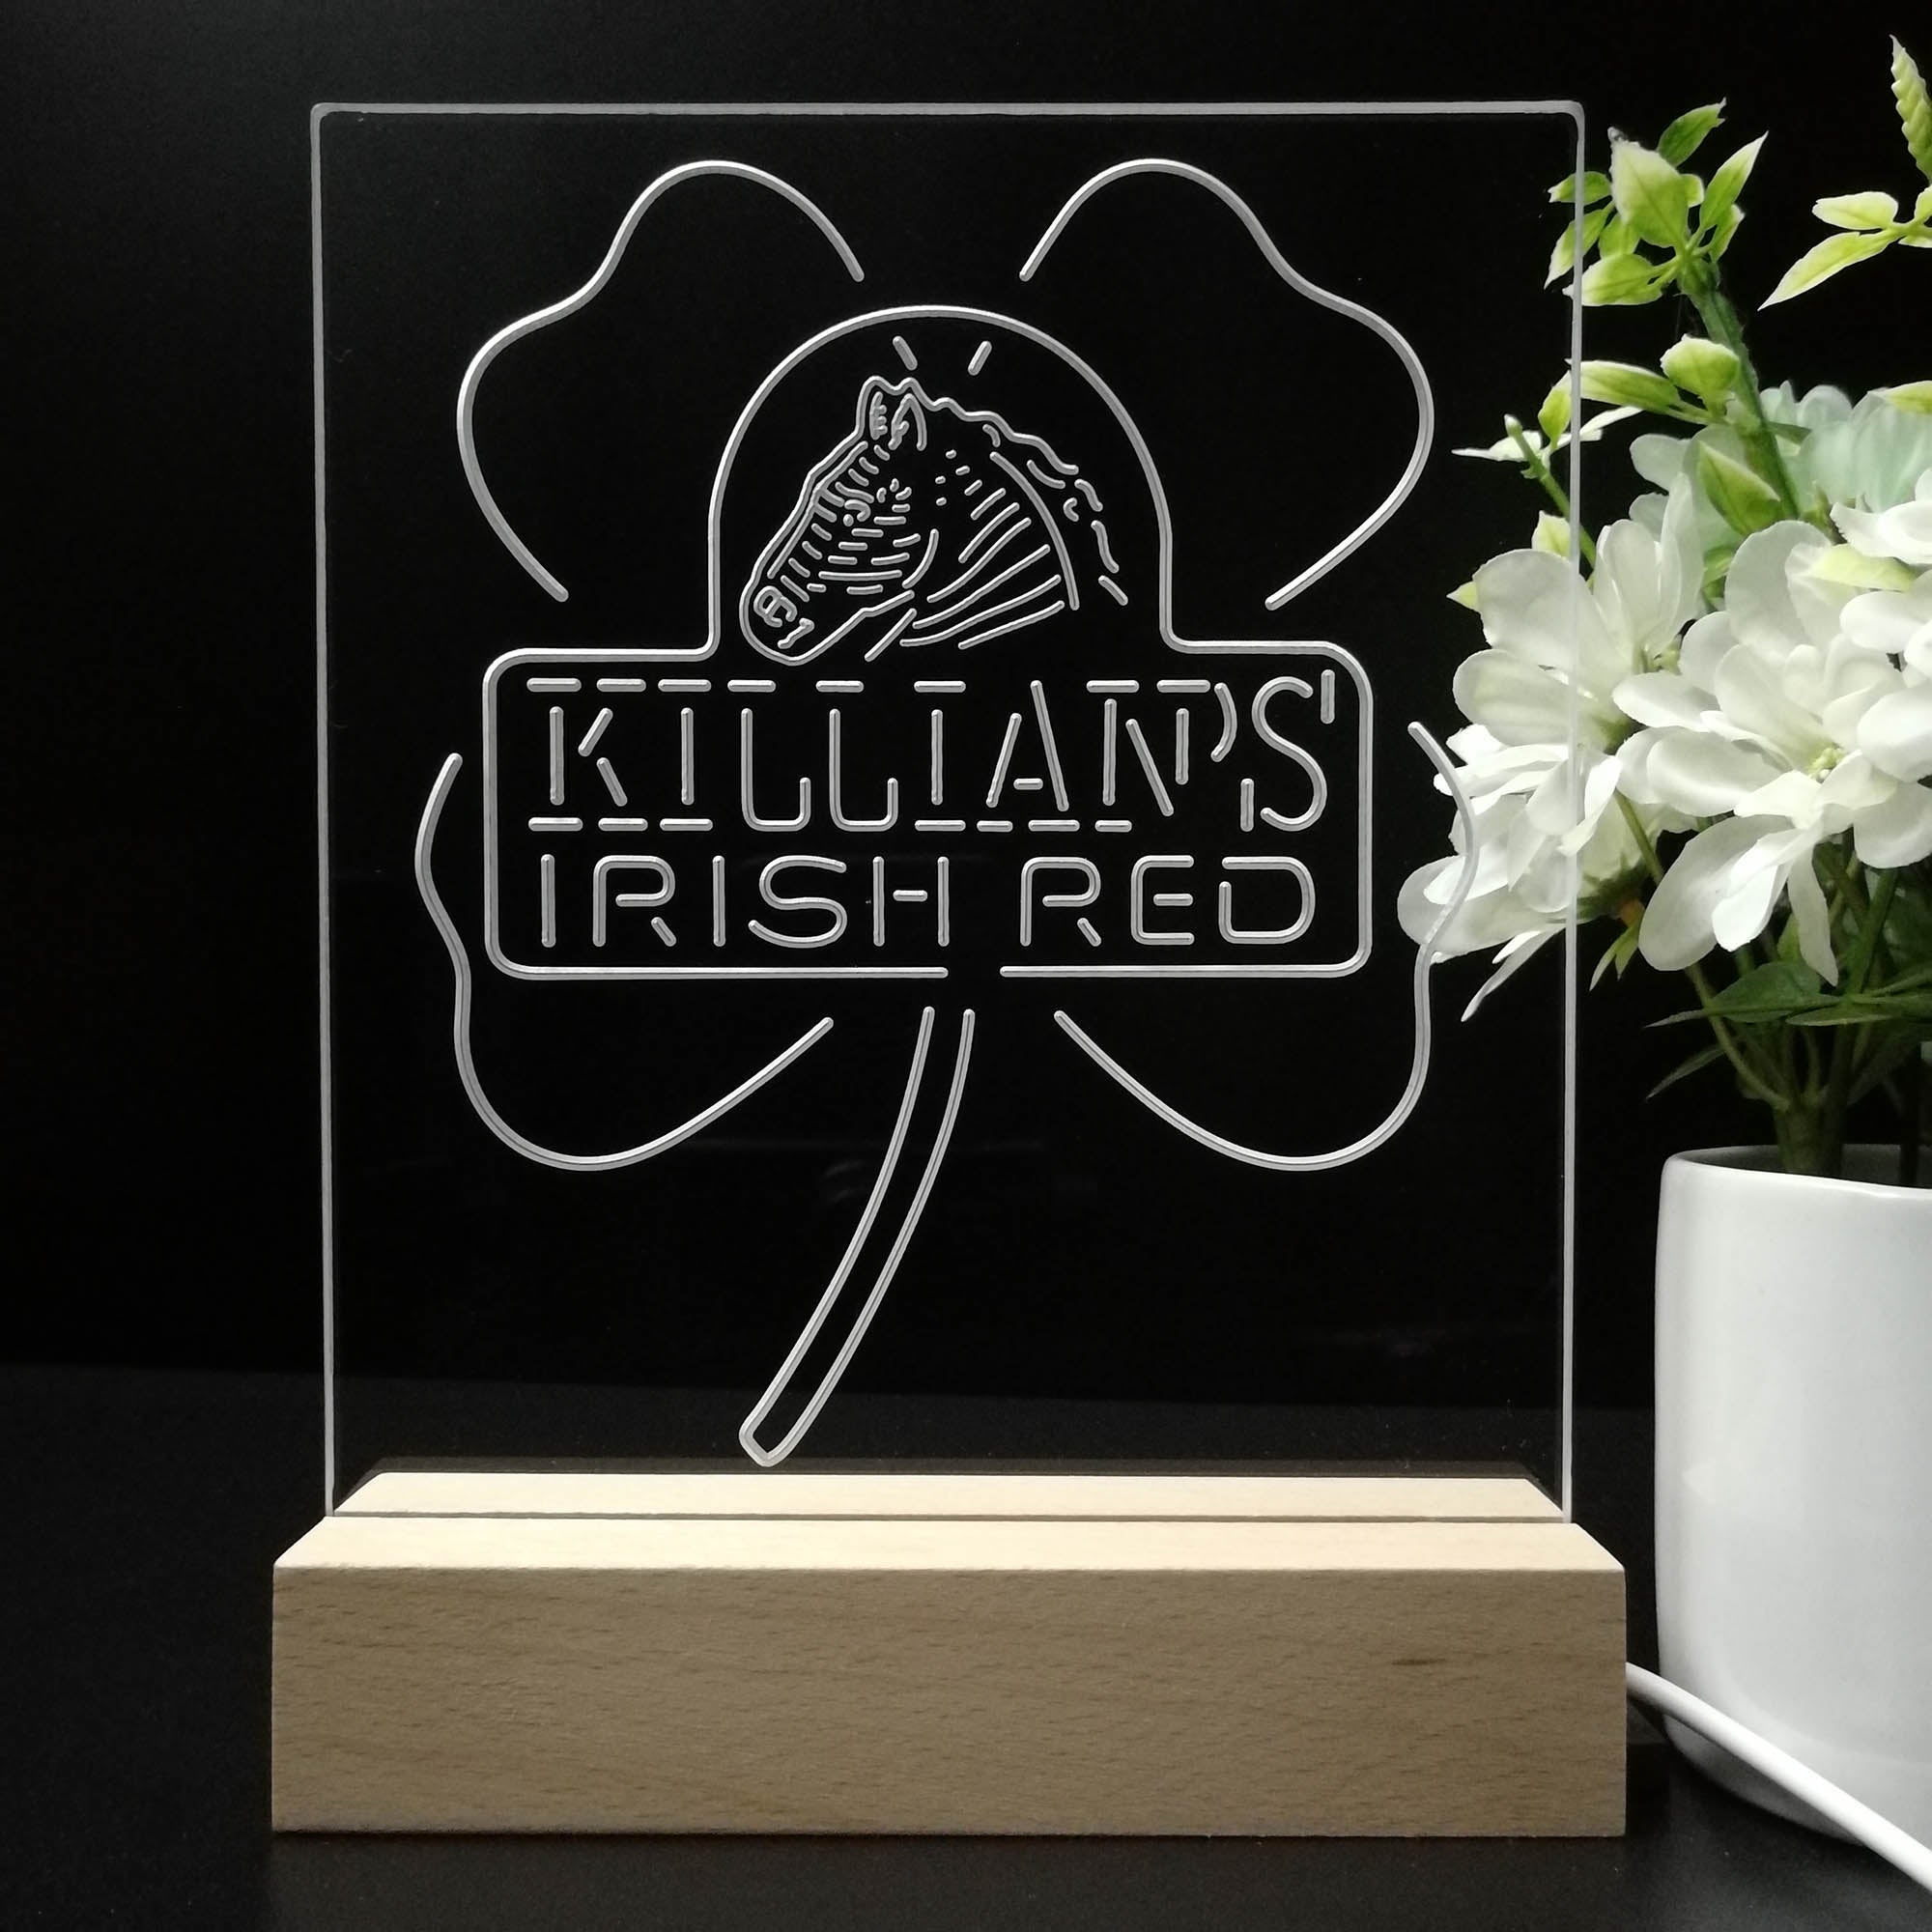 Killian's Irish Red Night Light Neon Pub Bar Lamp